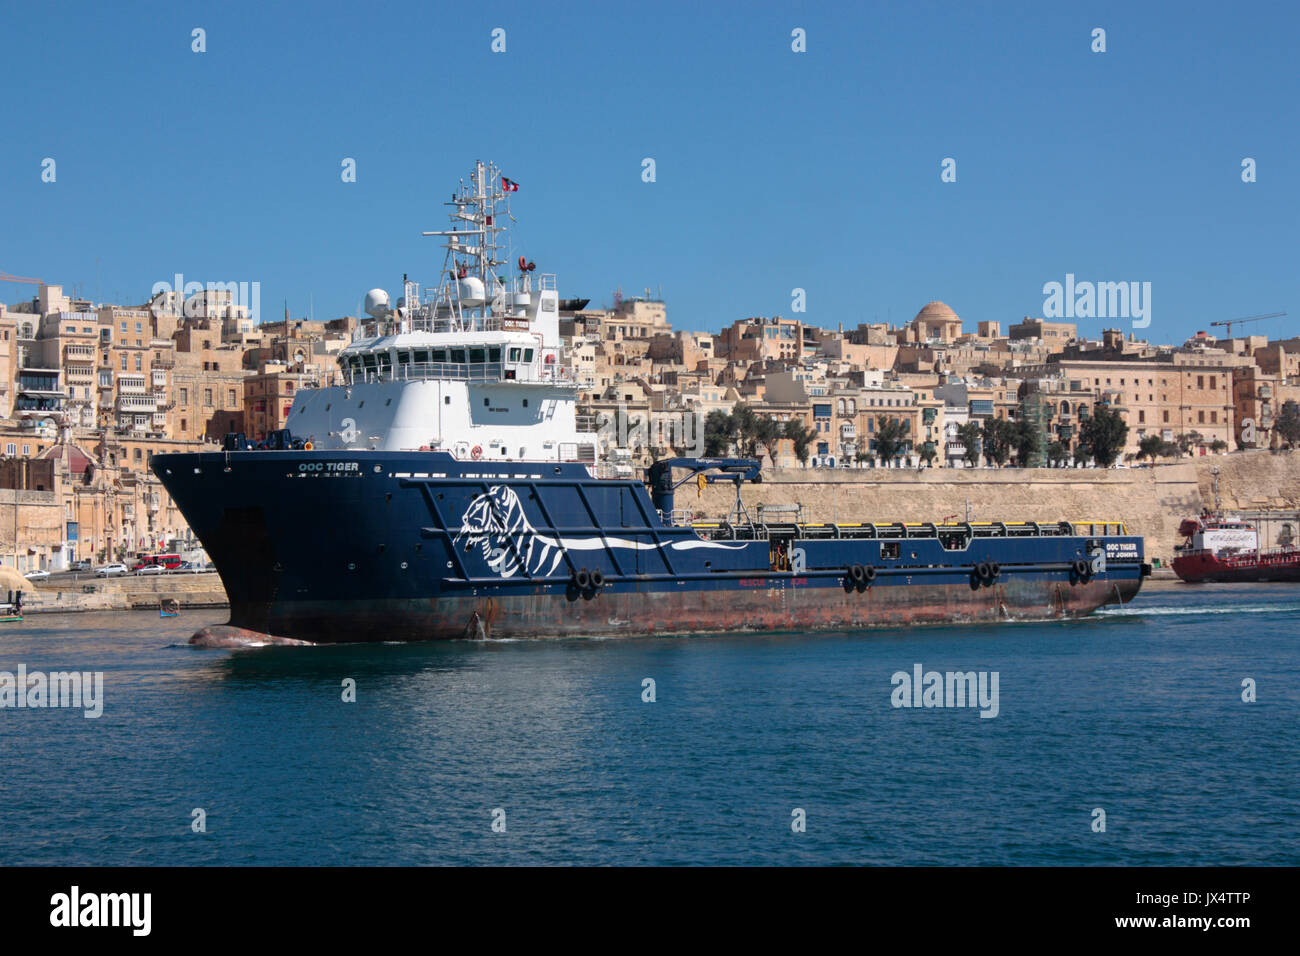 El buque de suministro de plataformas (PSV) o buque de aprovisionamiento offshore provocación abierta Tiger pasa por el recinto amurallado de la ciudad de La Valetta como se entra en el gran puerto de Malta. Foto de stock